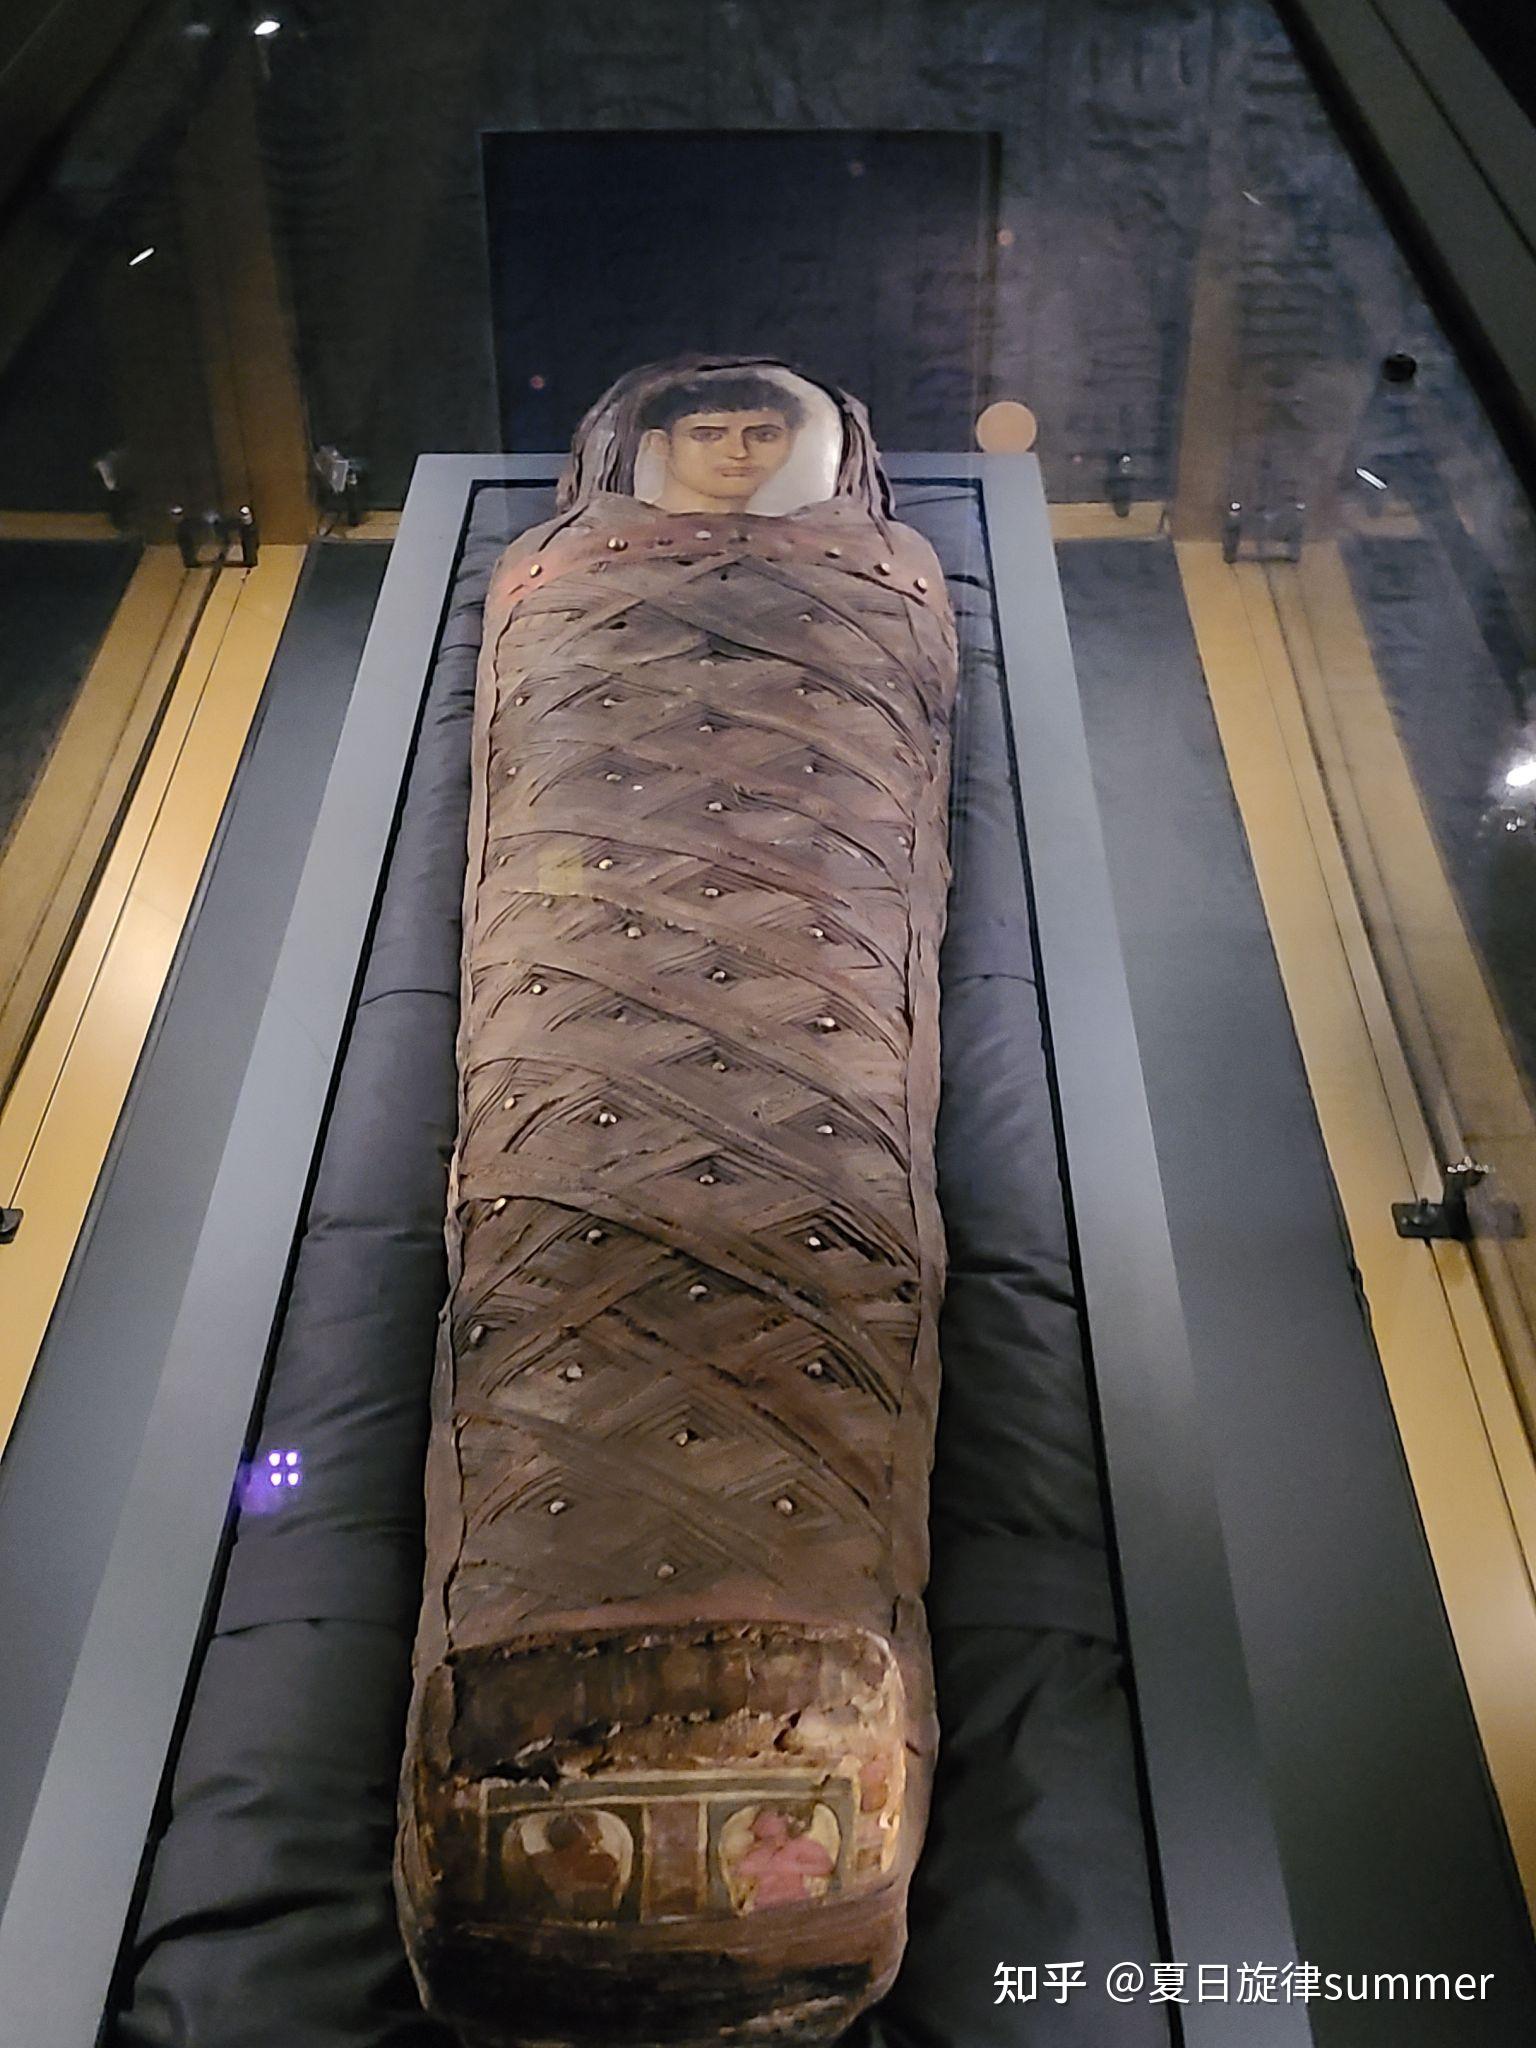 遇见古埃及·黄金木乃伊展3 展览核心部分——精美华丽的古埃及黄金